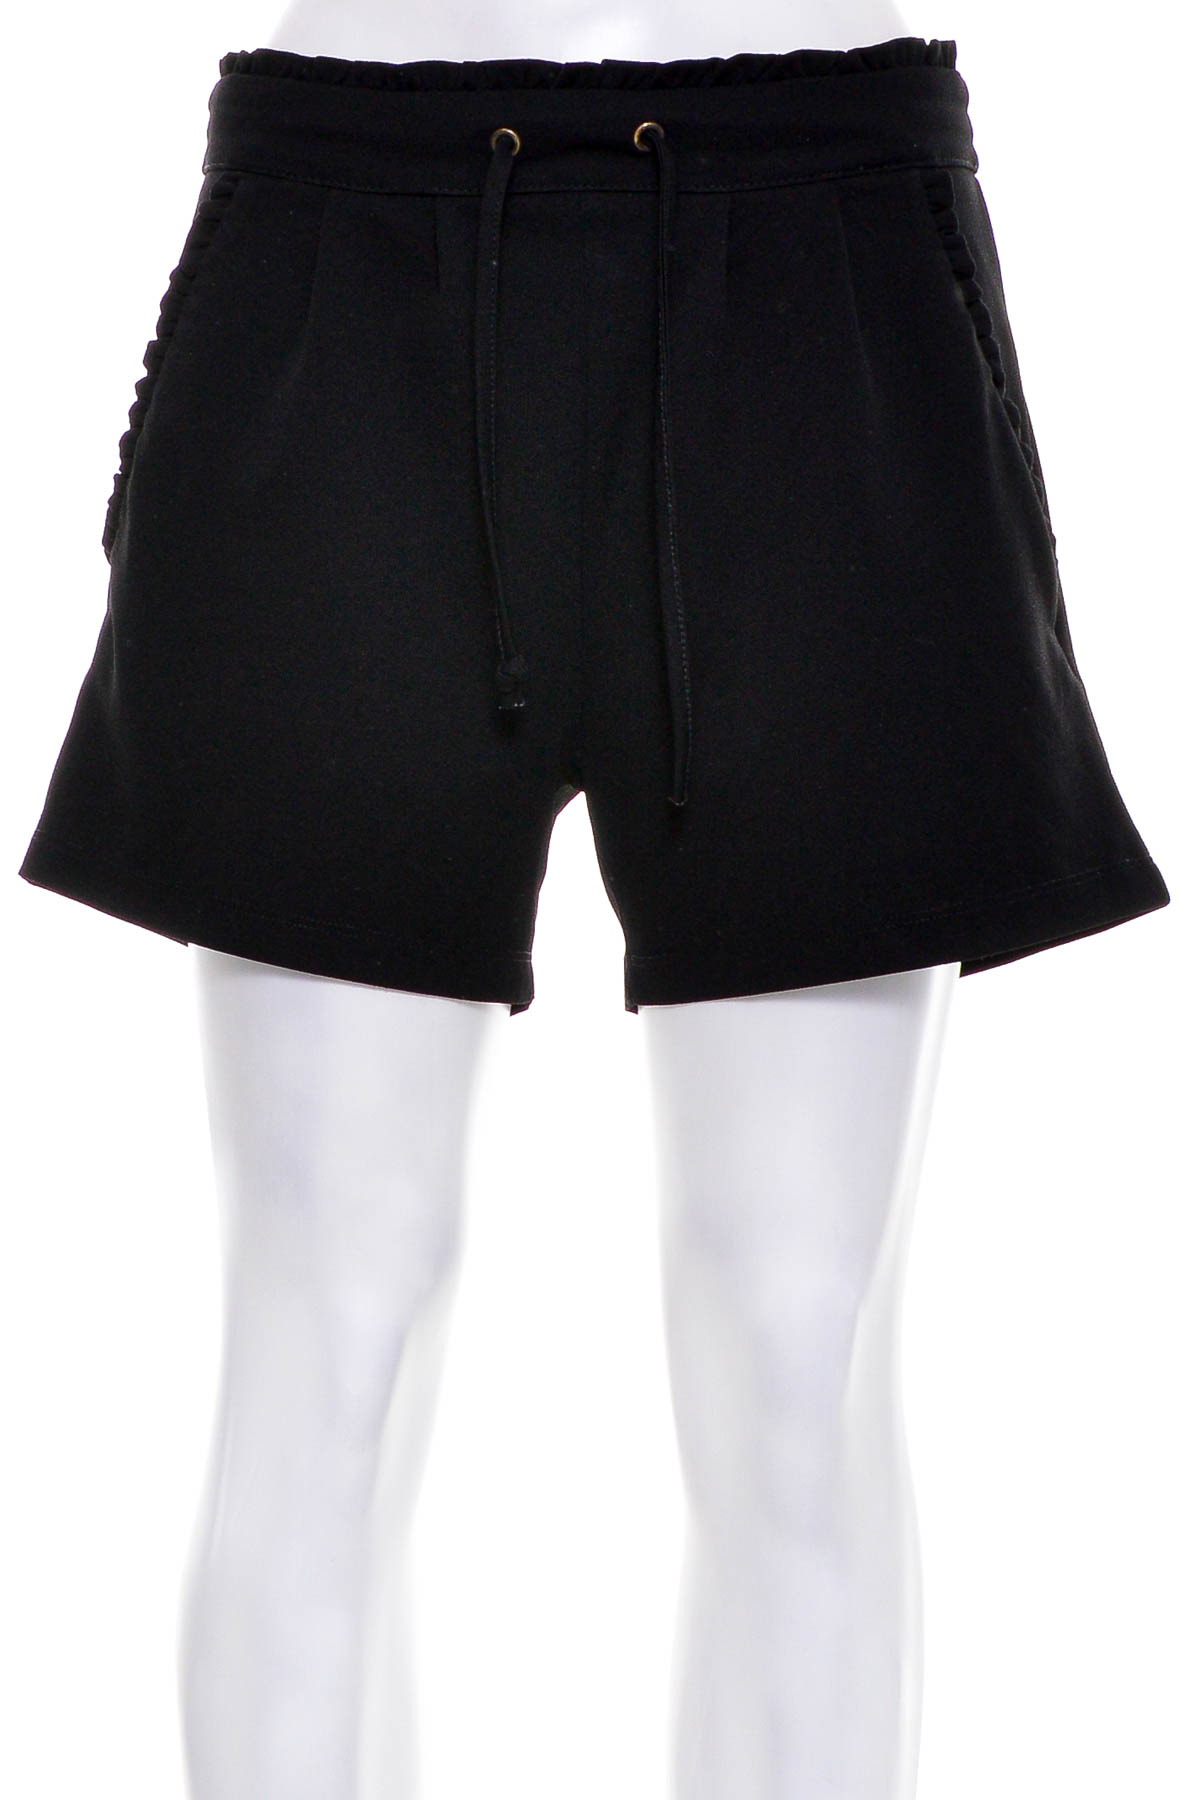 Female shorts - Jacqueline de Yong - 0